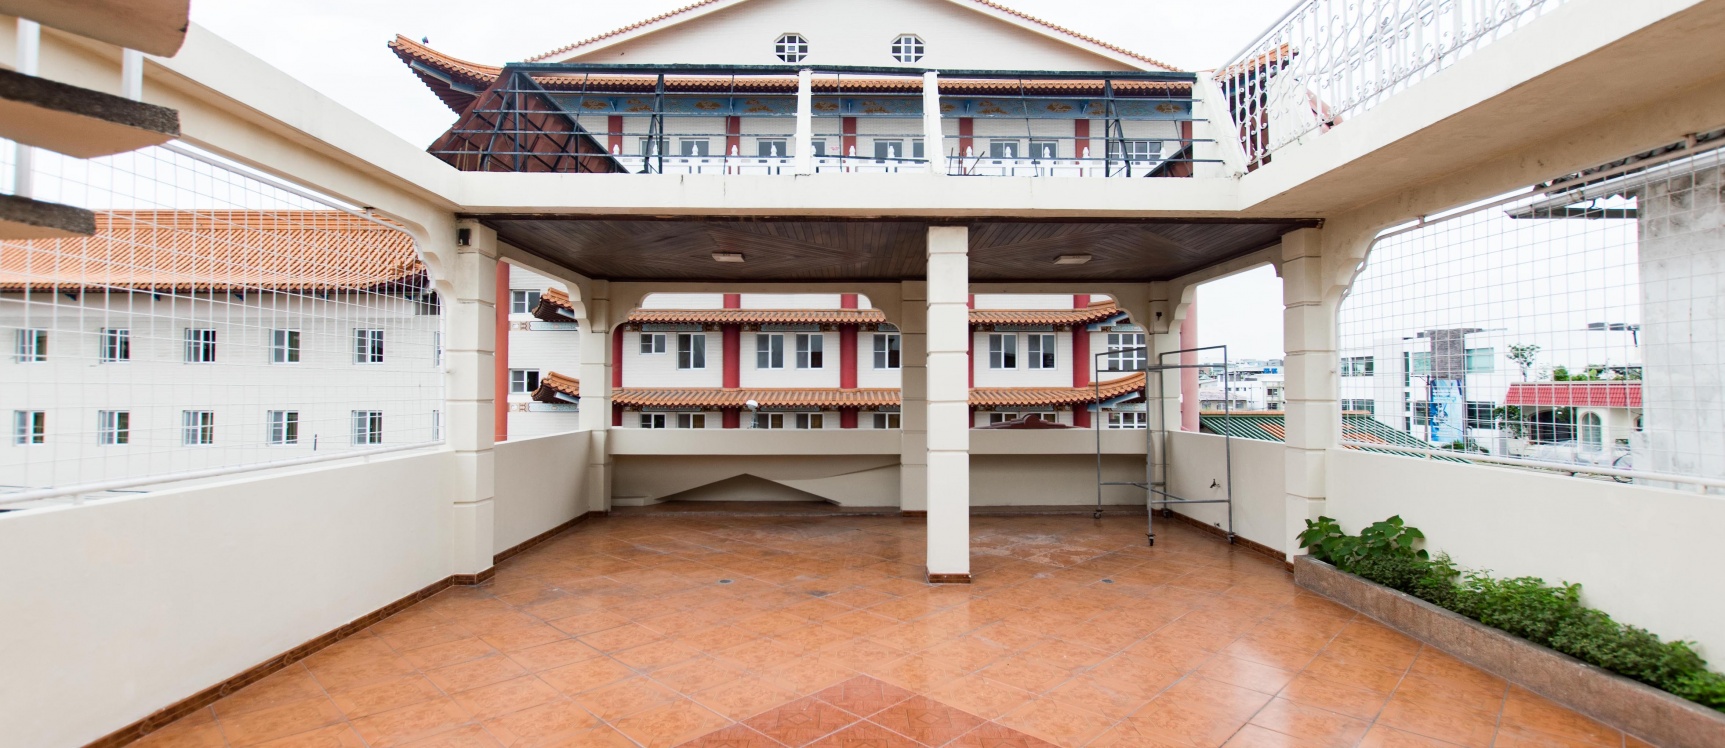 GeoBienes - Casa en venta ubicada en La Garzota, Norte de Guayaquil - Plusvalia Guayaquil Casas de venta y alquiler Inmobiliaria Ecuador